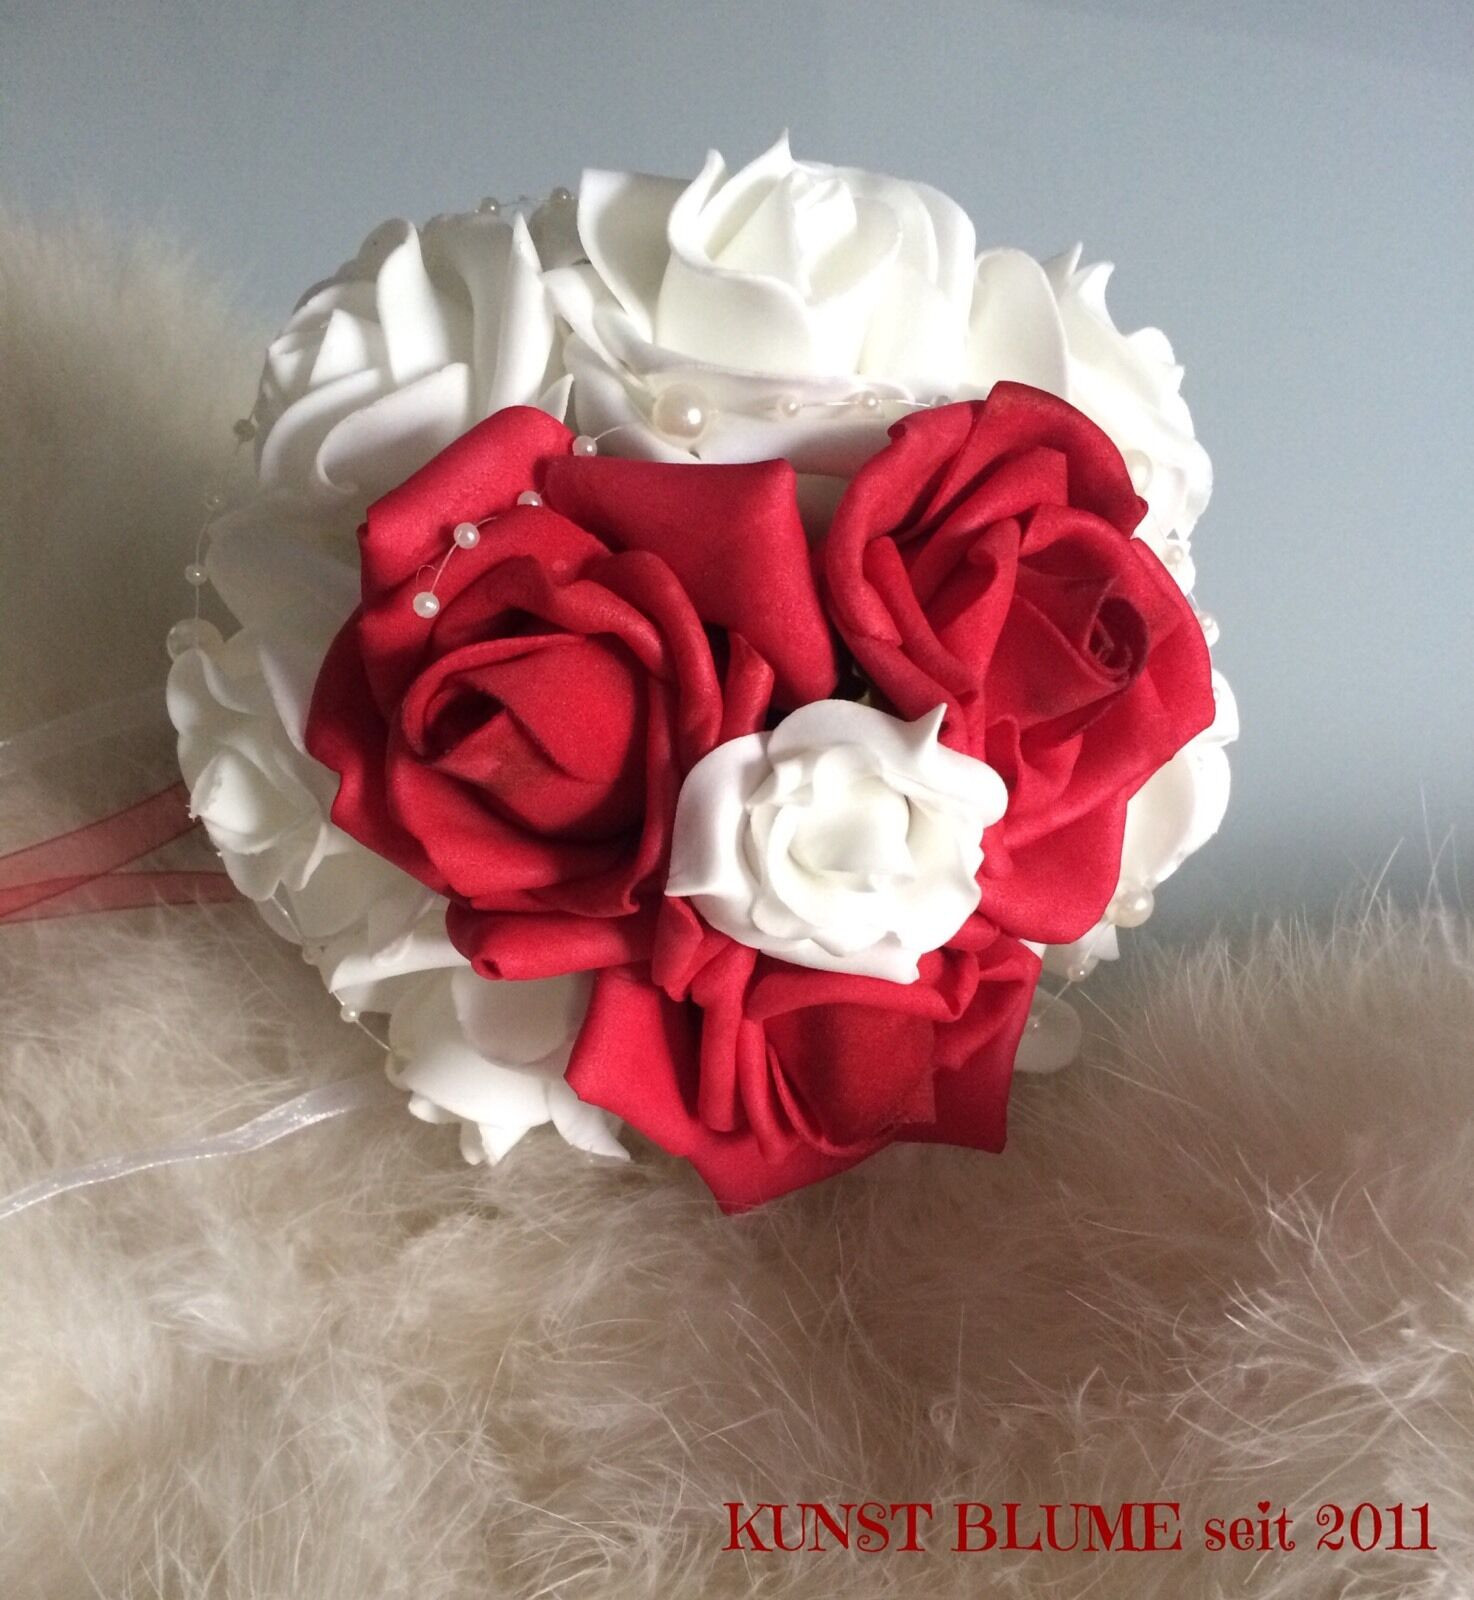 Kleiner Brautstrauß Standesamt Kosten
 KLEINER Brautstrauß Wurfstrauß Standesamt Rosen rot weiß